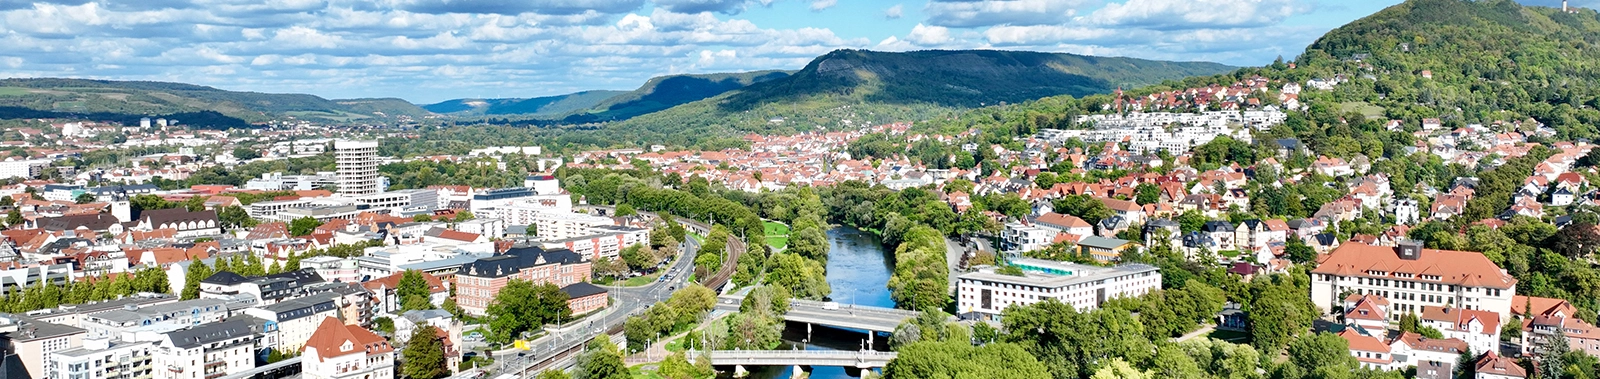 Symbolbild Blick auf Jena in nördliche Richtung